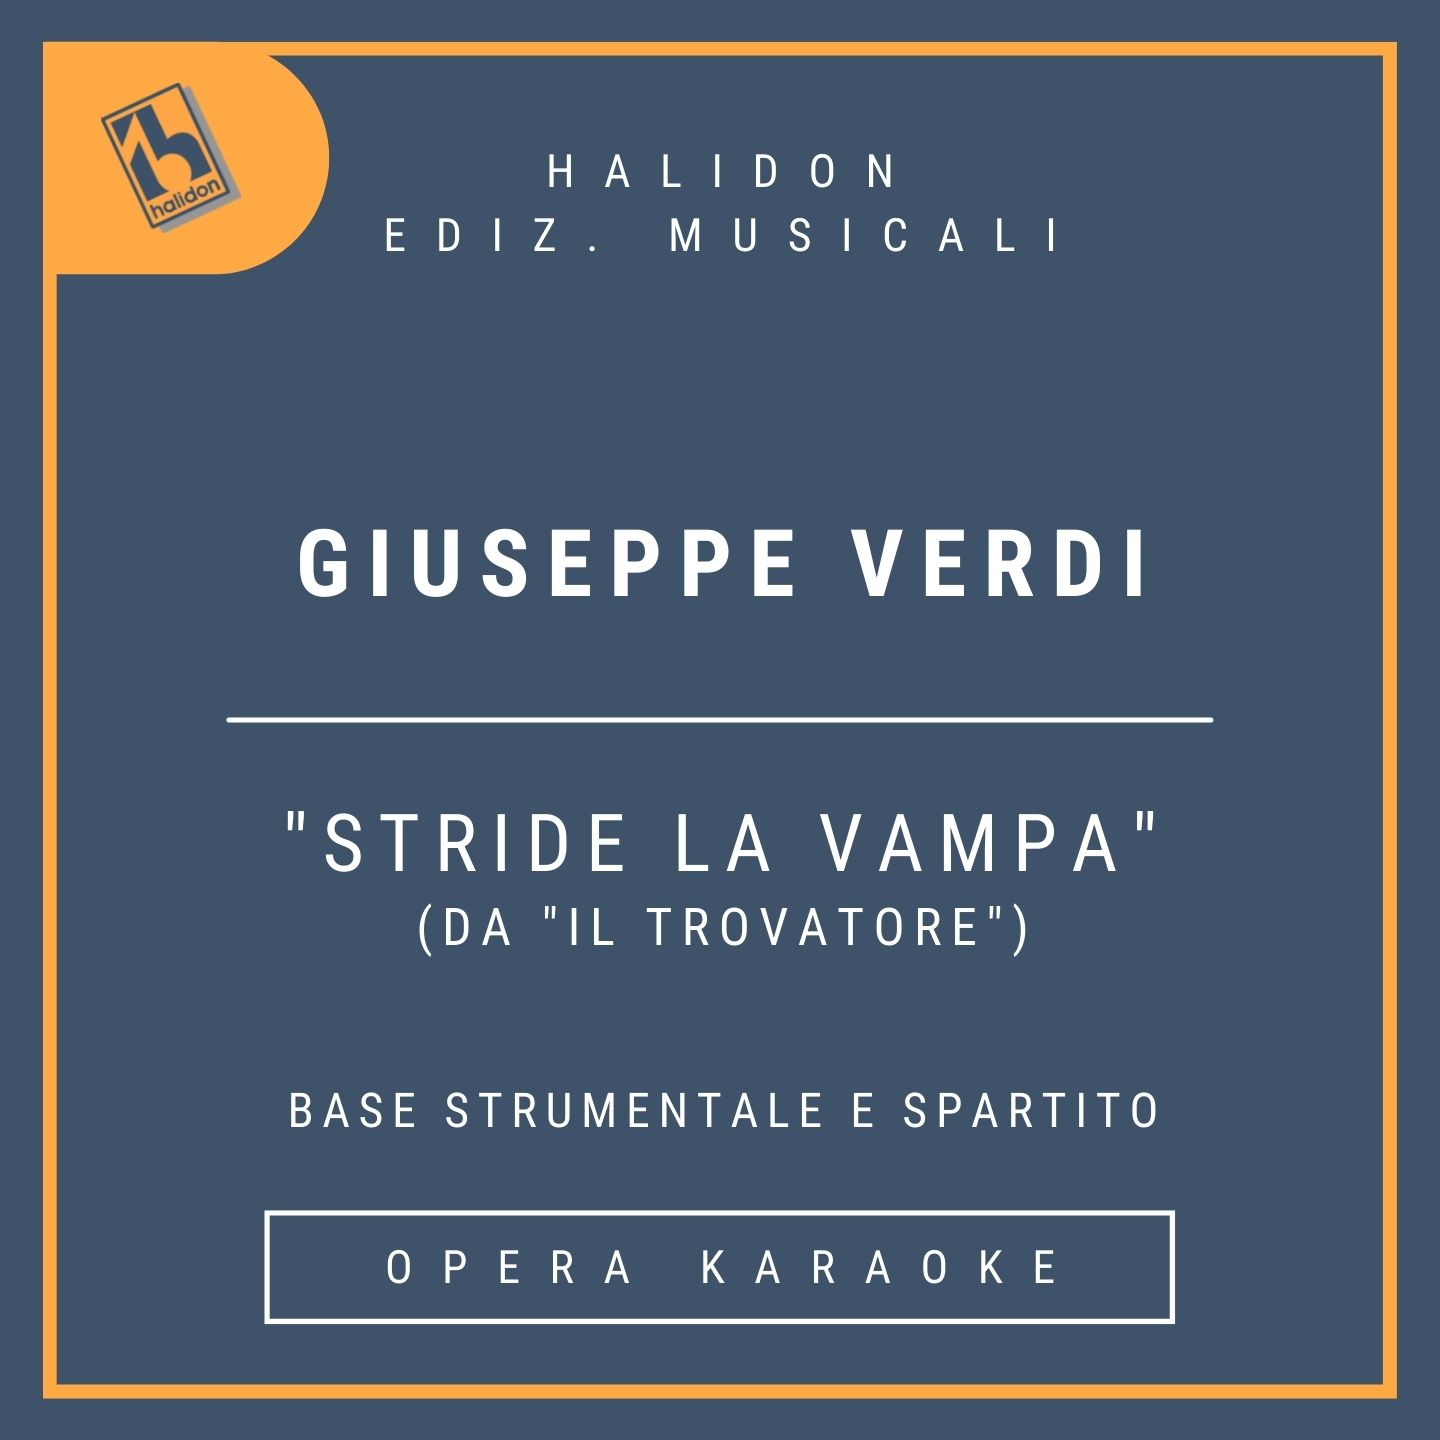 Giuseppe Verdi - Stride la vampa (from 'Il Trovatore') - Azucena's Aria (mezzo) - Instrumental track + sheet